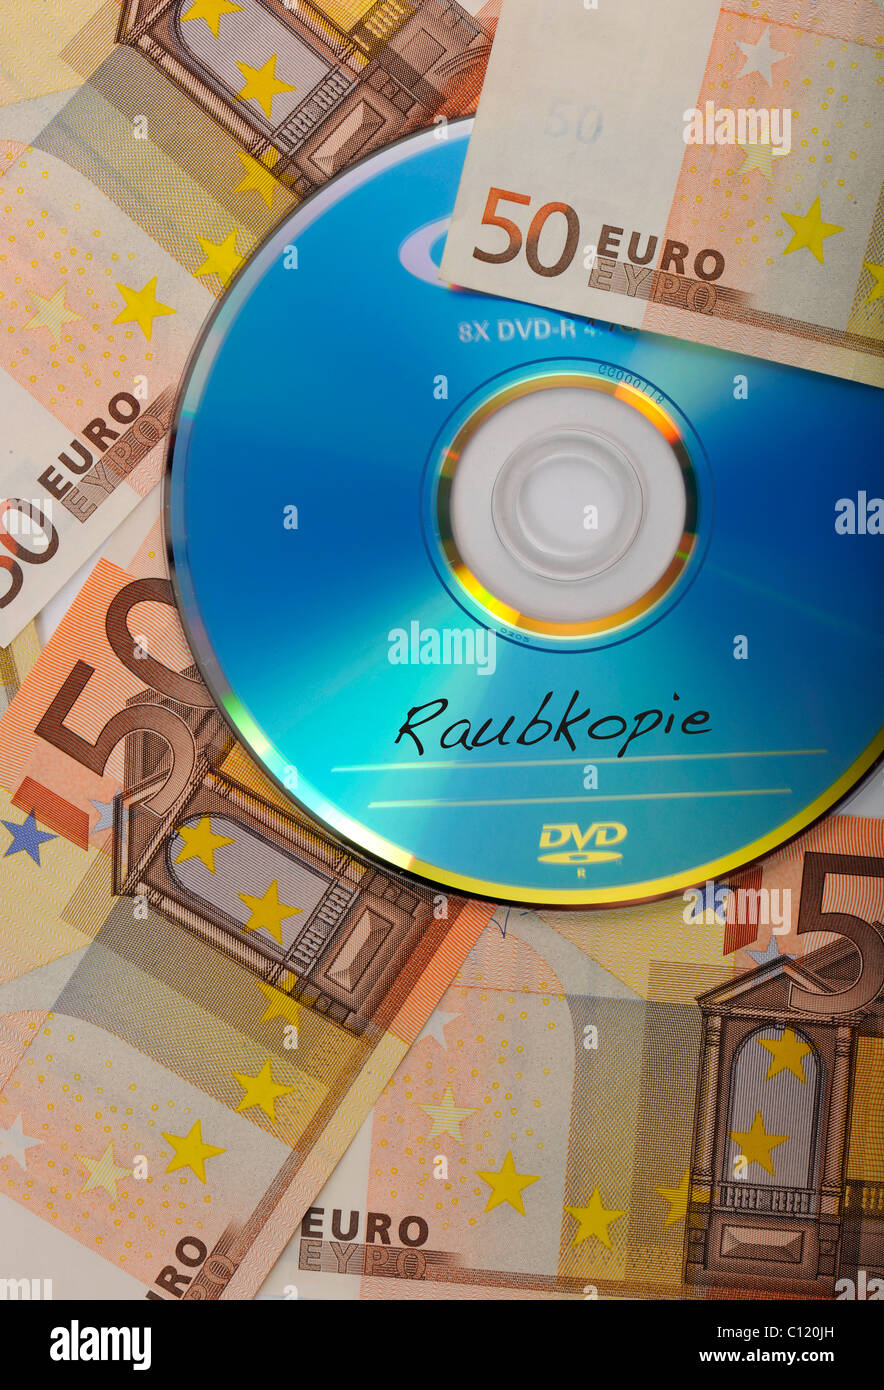 DVD, CD, billetes de euro, imagen simbólica para un concierto, la piratería Foto de stock